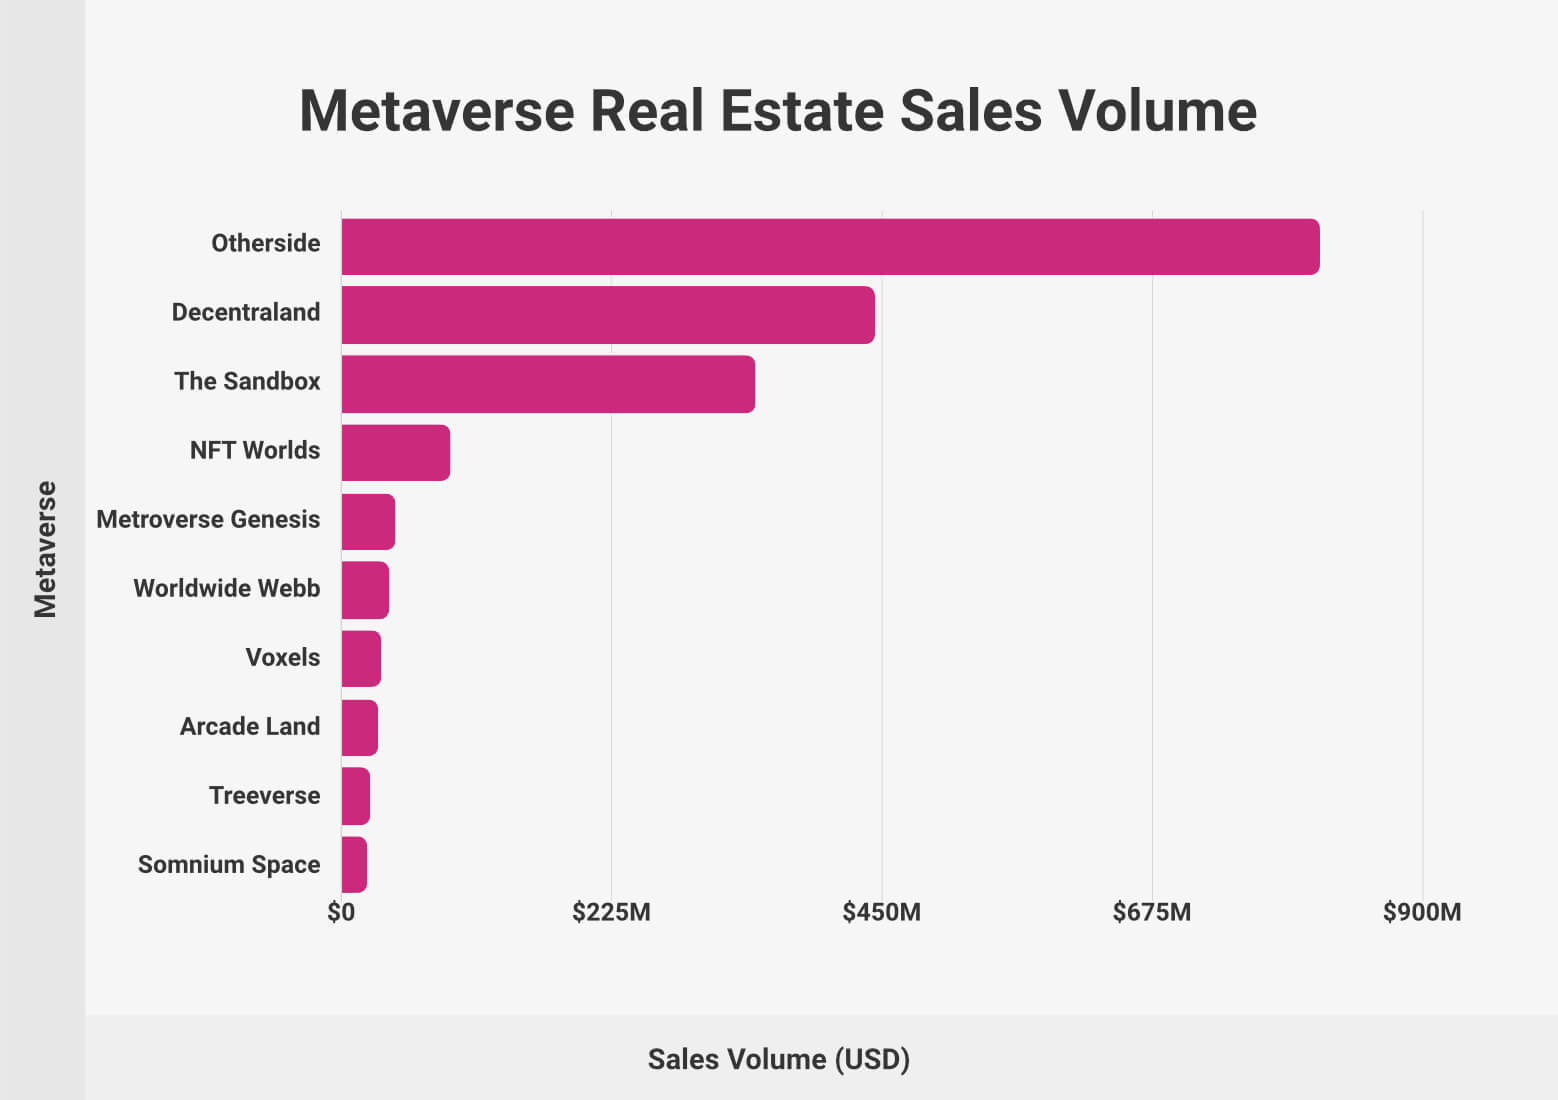 Metaverse Real Estate Sales Volume